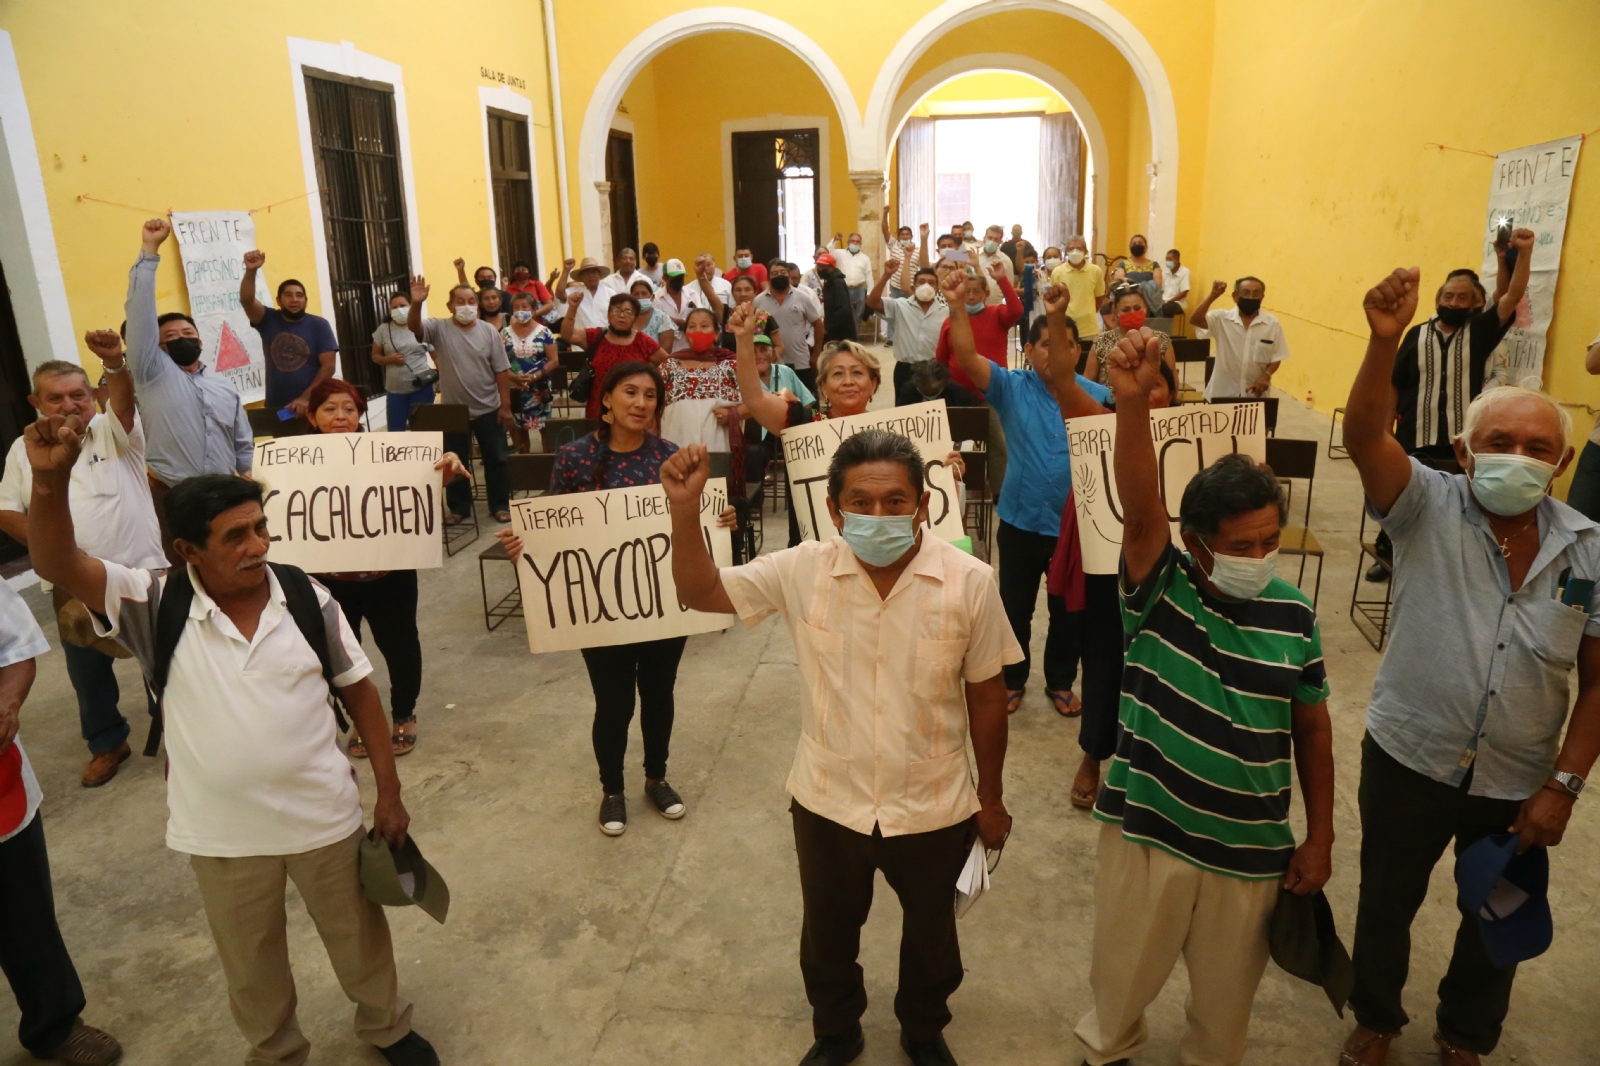 Ejidatarios de Yucatán reclamarán sus tierras a loteros abusivos este 1 de Mayo